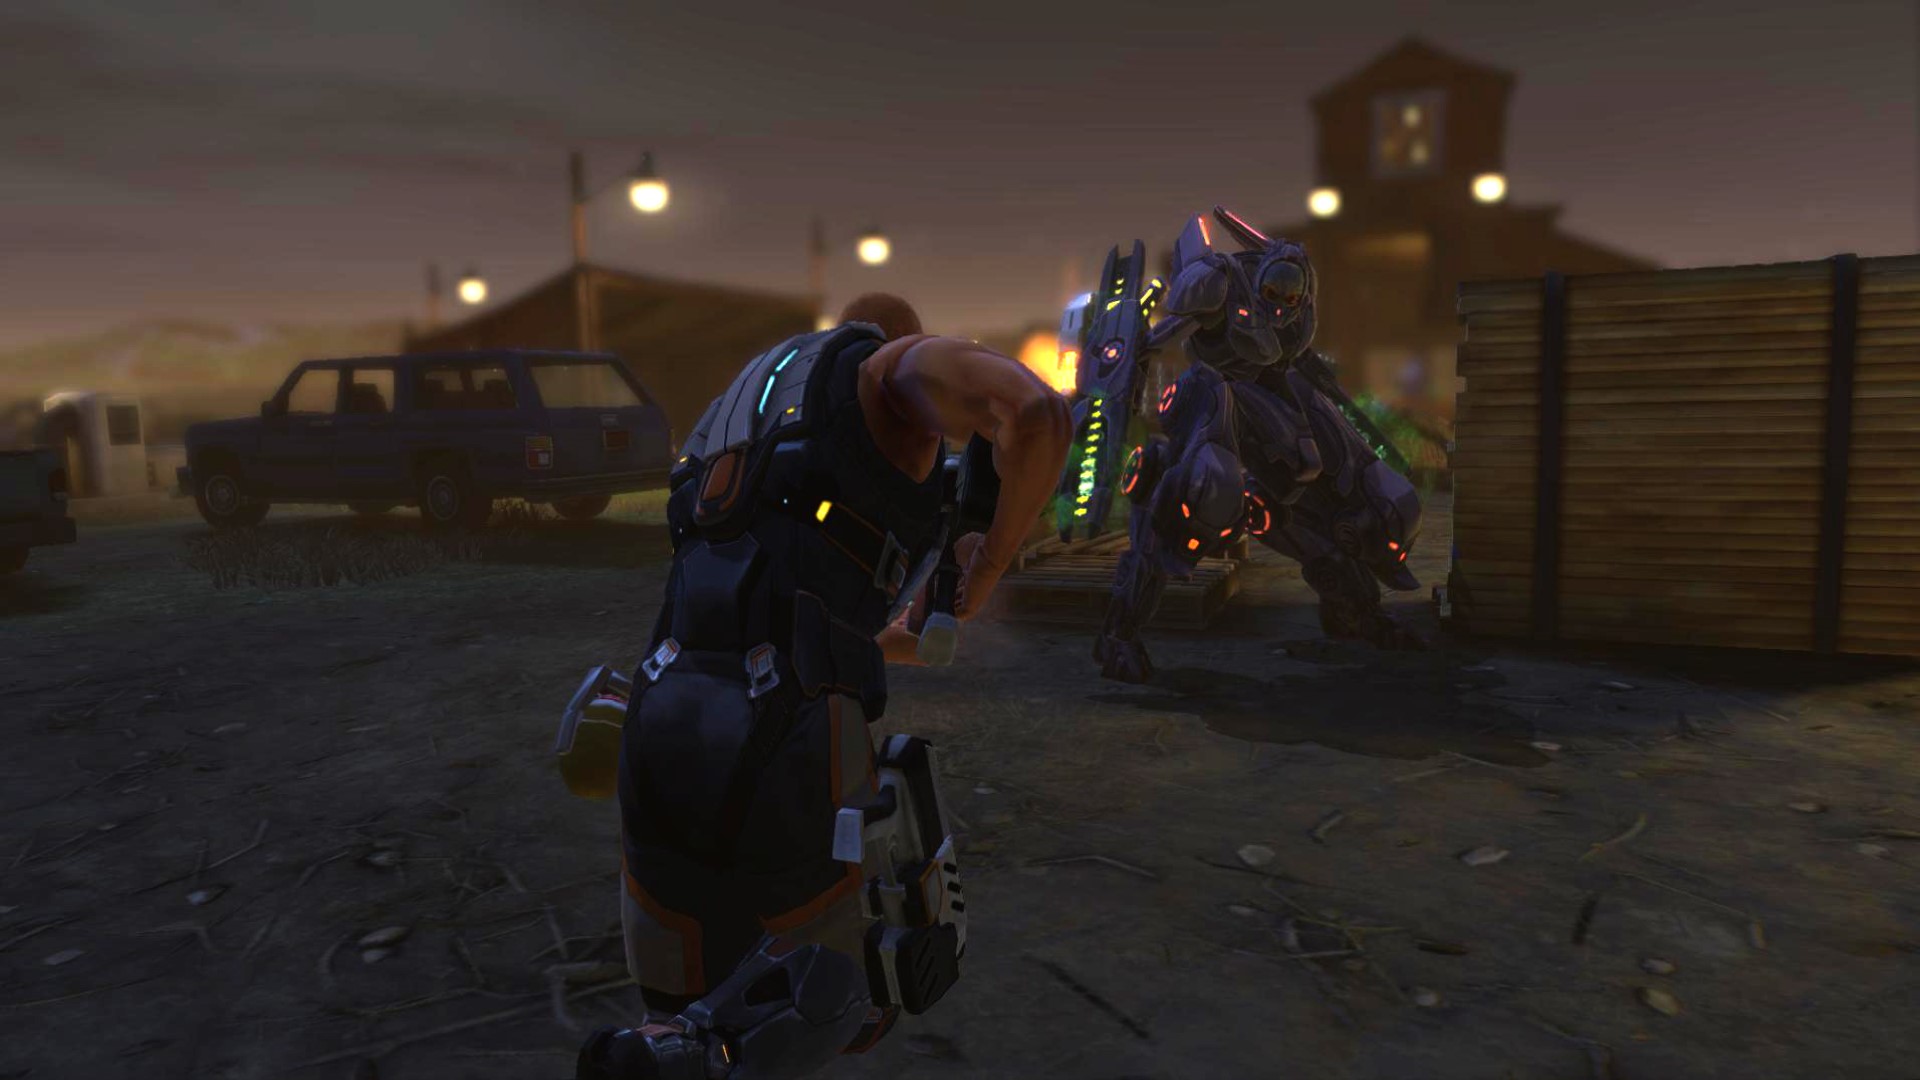 Trò chơi chiến lược di động tốt nhất: XCOM: Kẻ thù bên trong. Hình ảnh cho thấy hai người trong áo giáp tương lai cầm súng